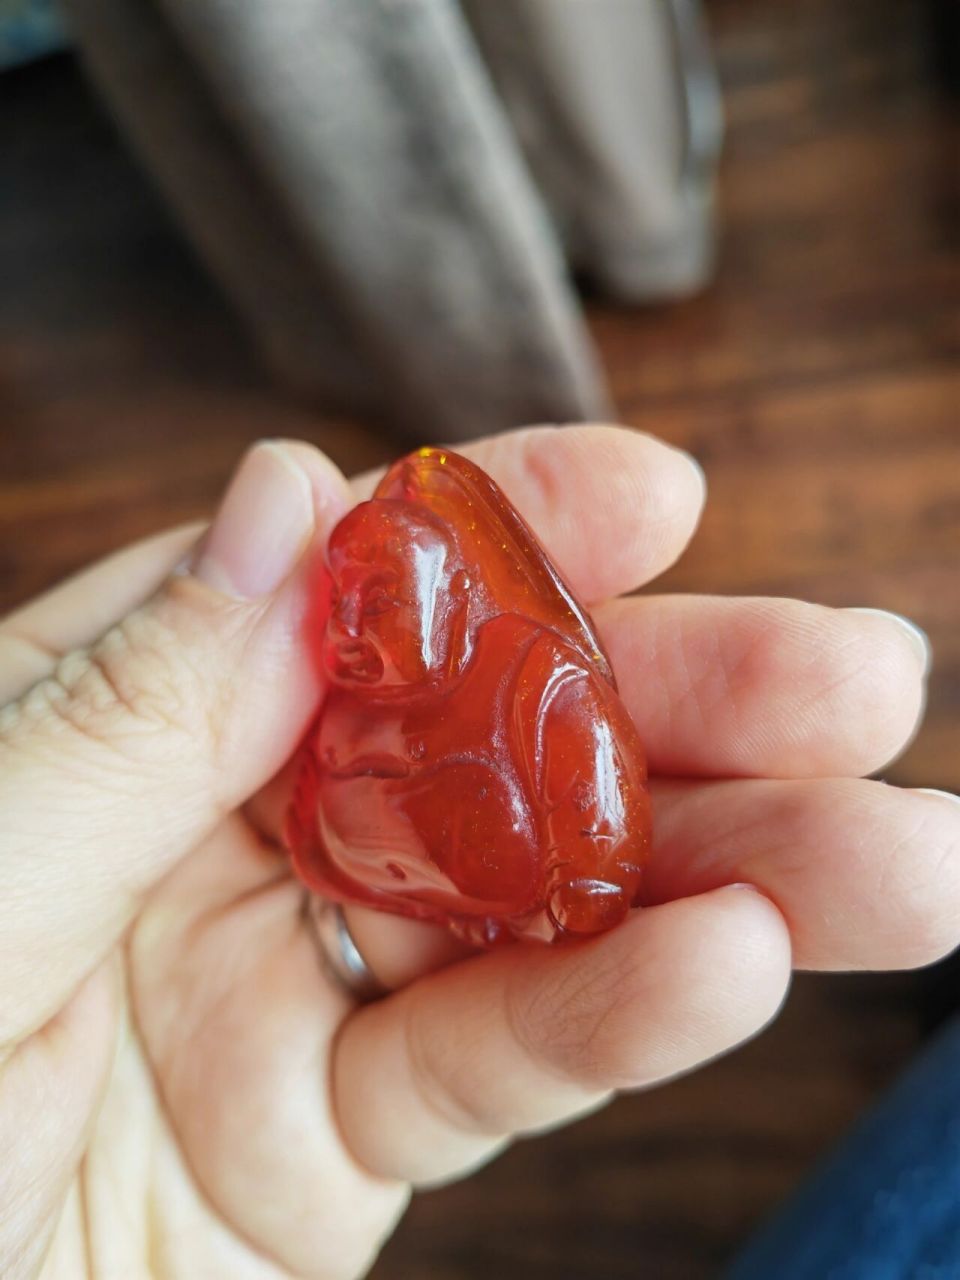 一颗红色老蜜蜡,求鉴定真伪的方法 在香港的时候买的,超过20年的老